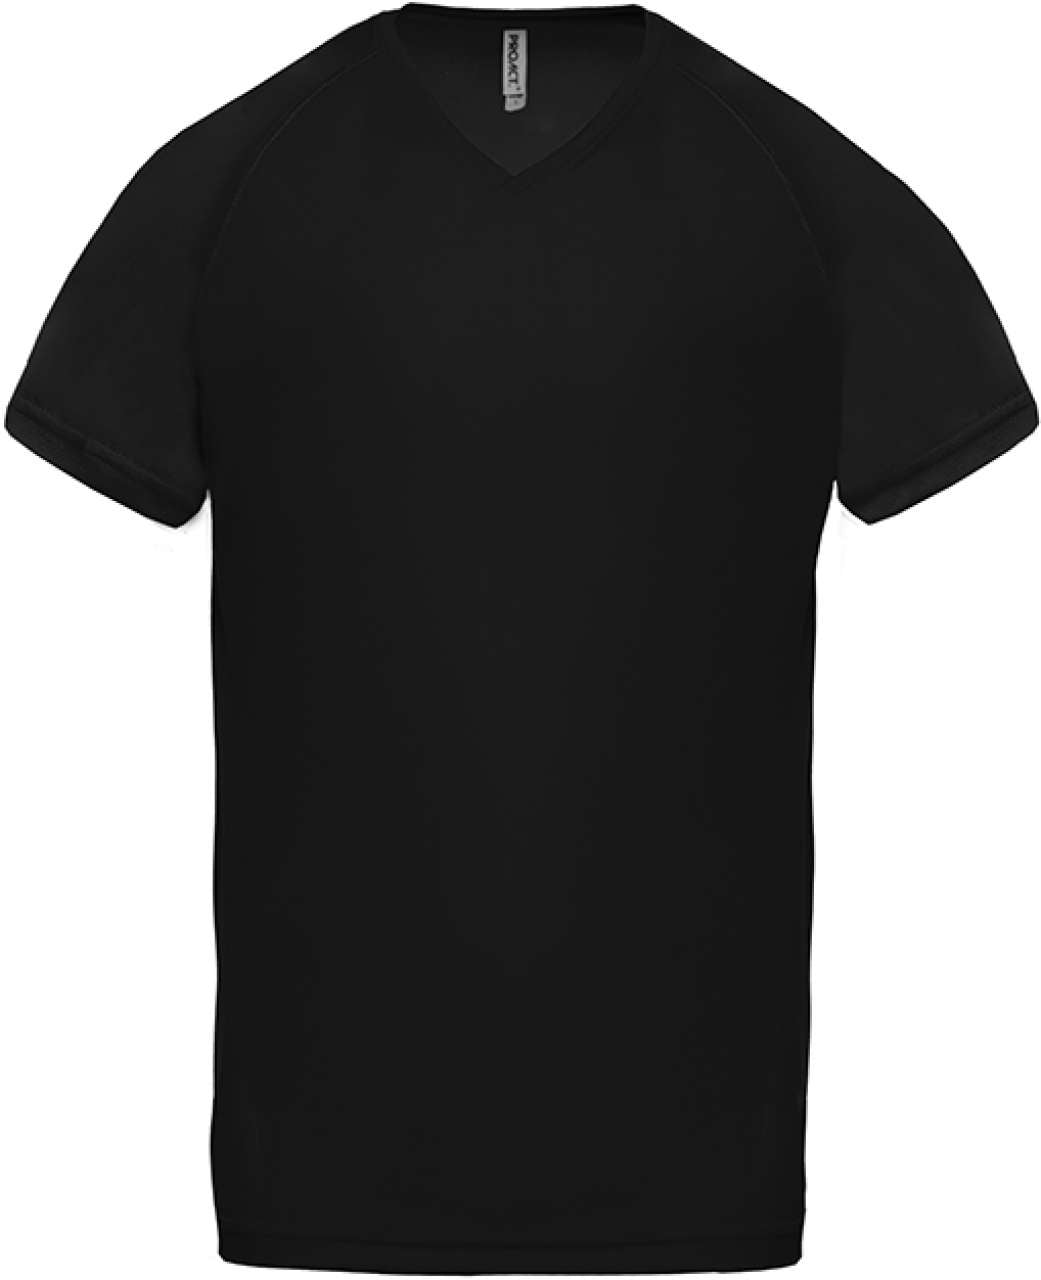 Proact Herren Sport T-Shirt Muskelshirt Short Sleeve Sportshirt Kurzarm